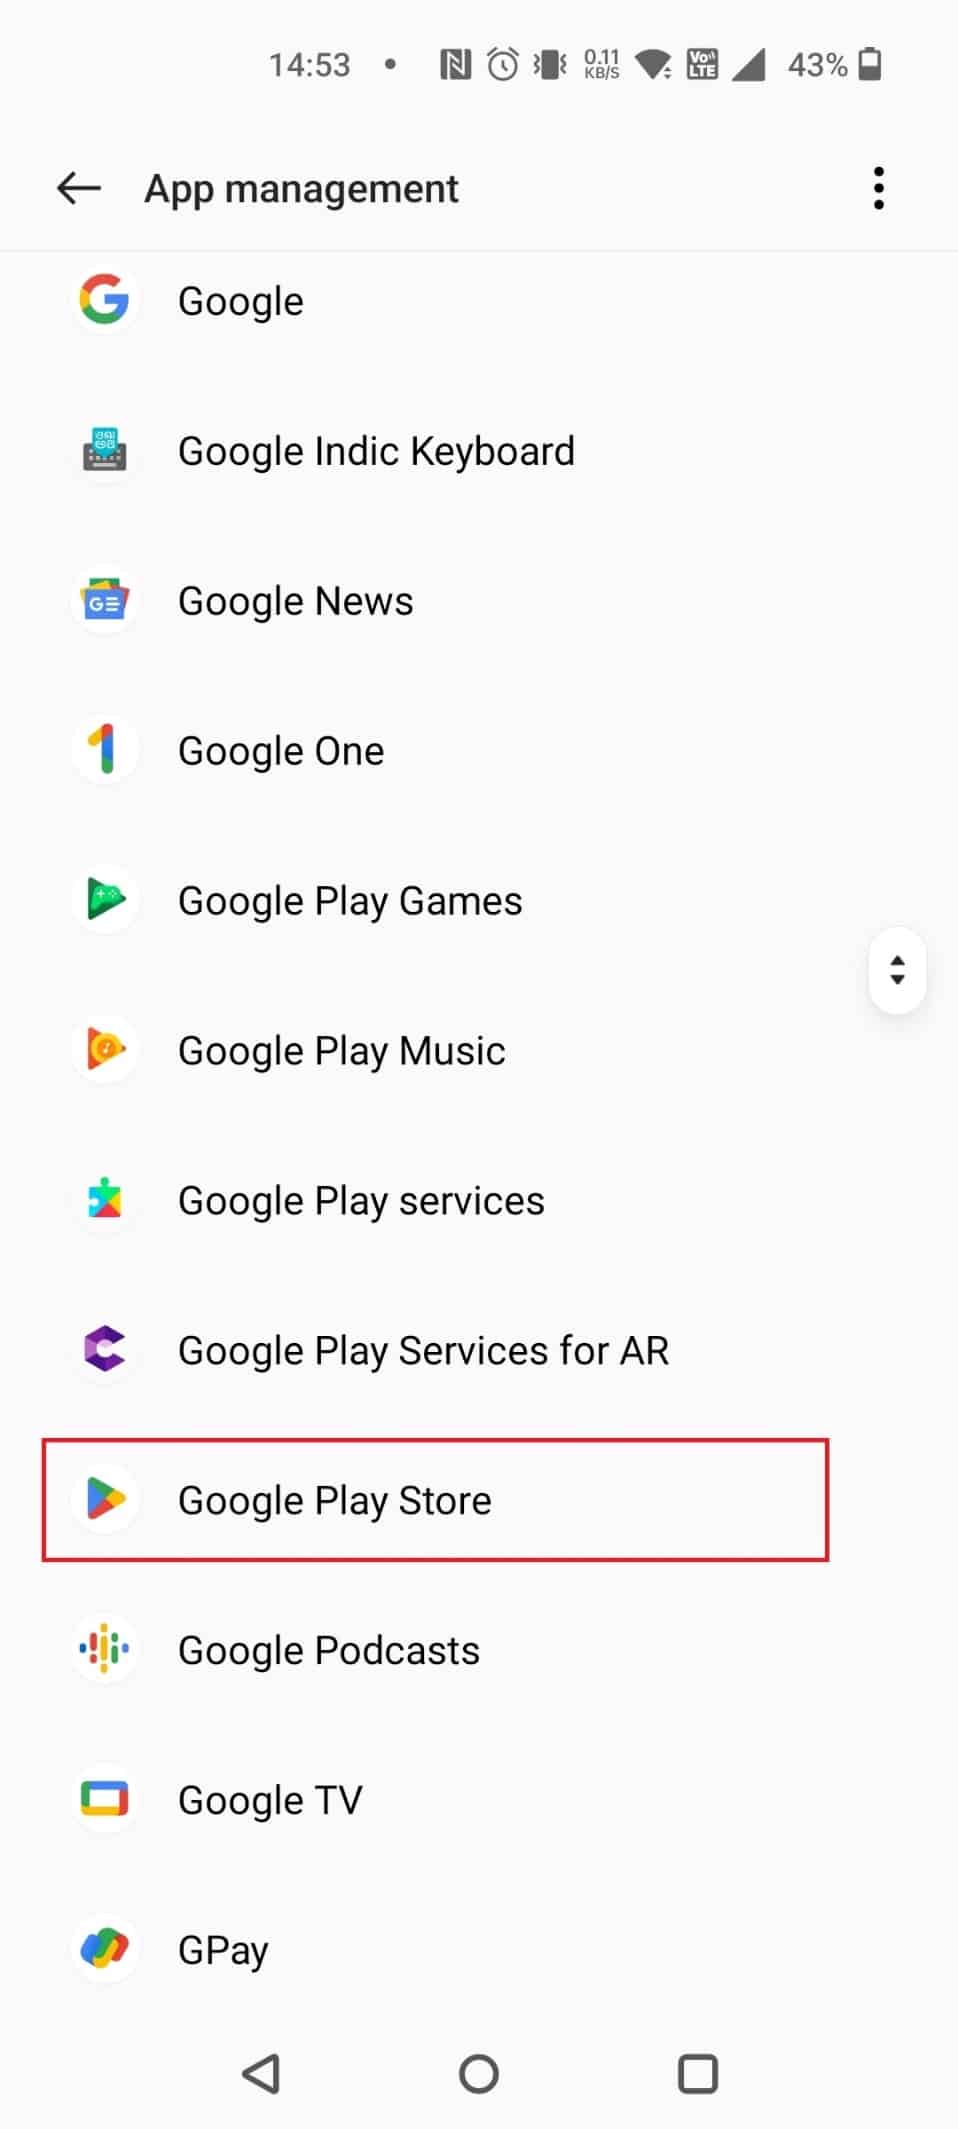 Google Play ストアを選択 | Google でペアレンタル コントロールのメールを切り替える方法